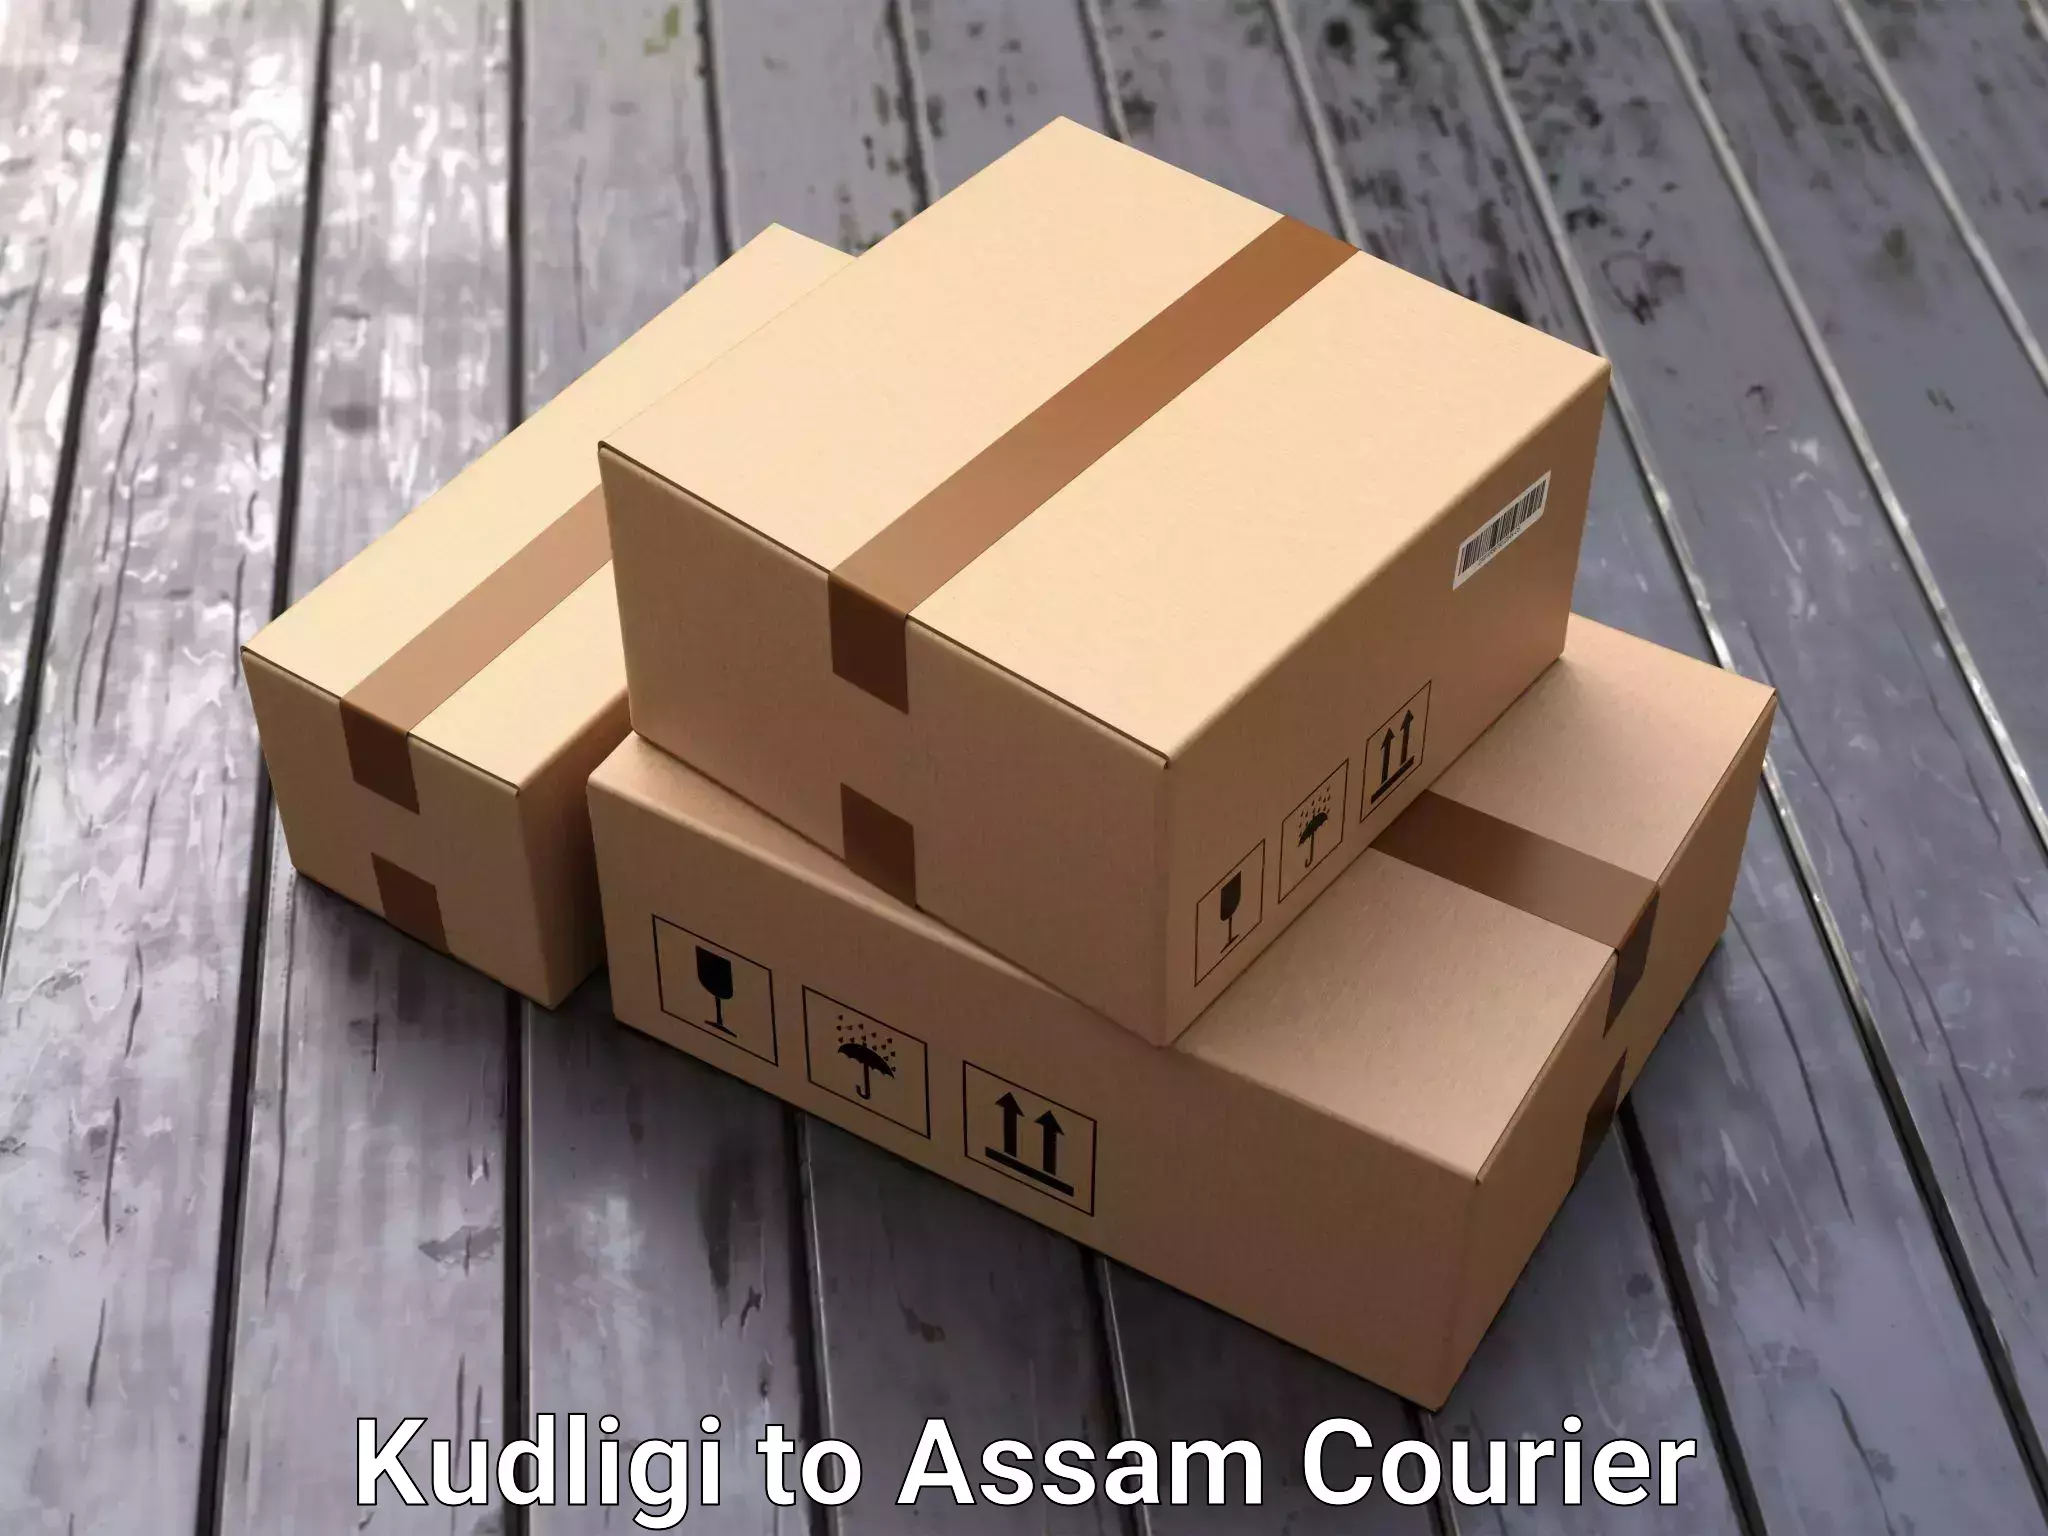 Professional movers Kudligi to Assam